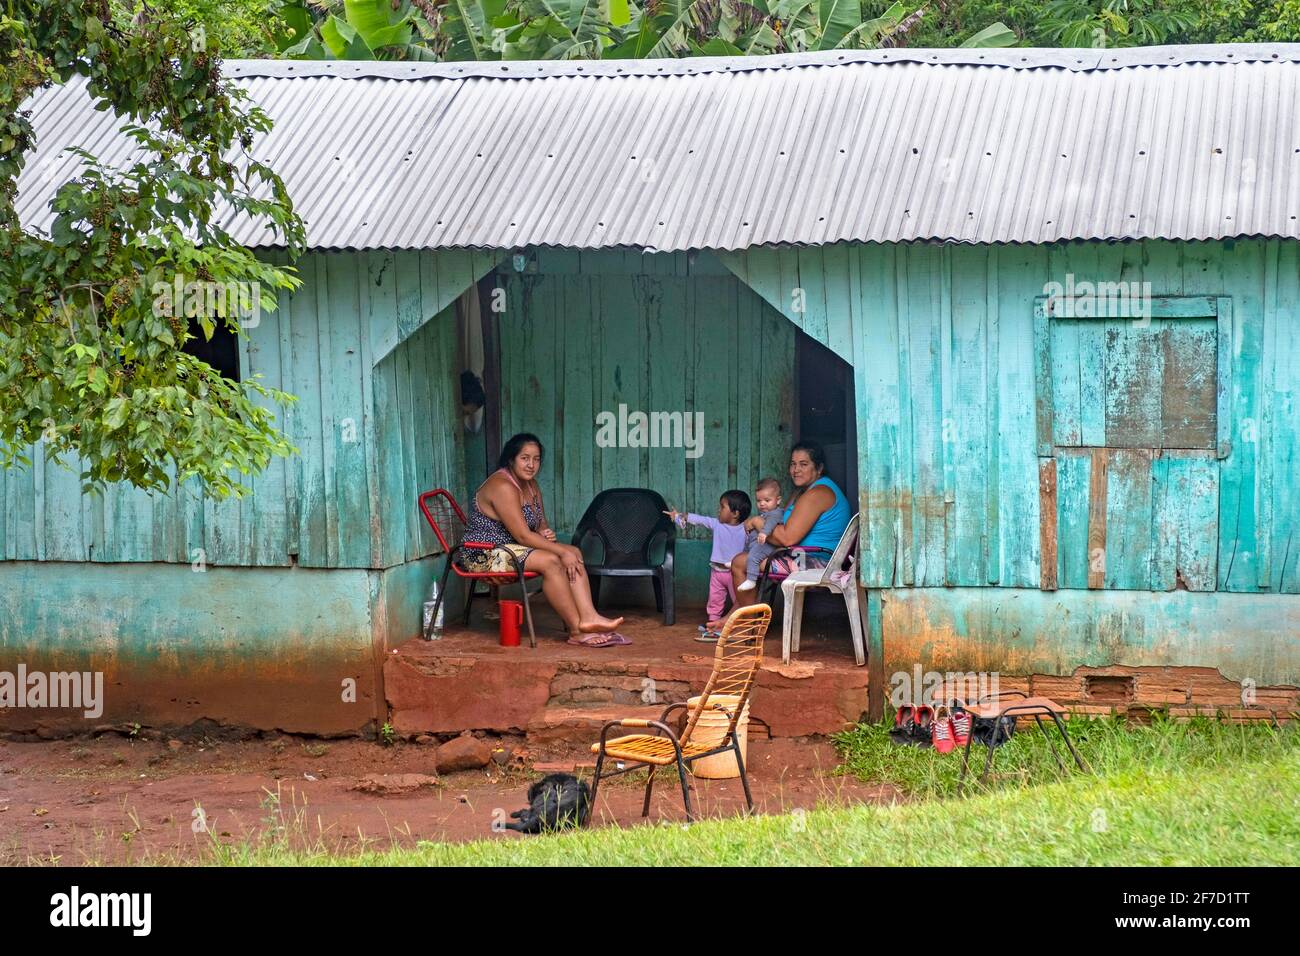 Famille posant dans une cabane en bois avec toit en tôle ondulée dans un village rural près de Ciudad del Este, Alto Paraná, Paraguay Banque D'Images